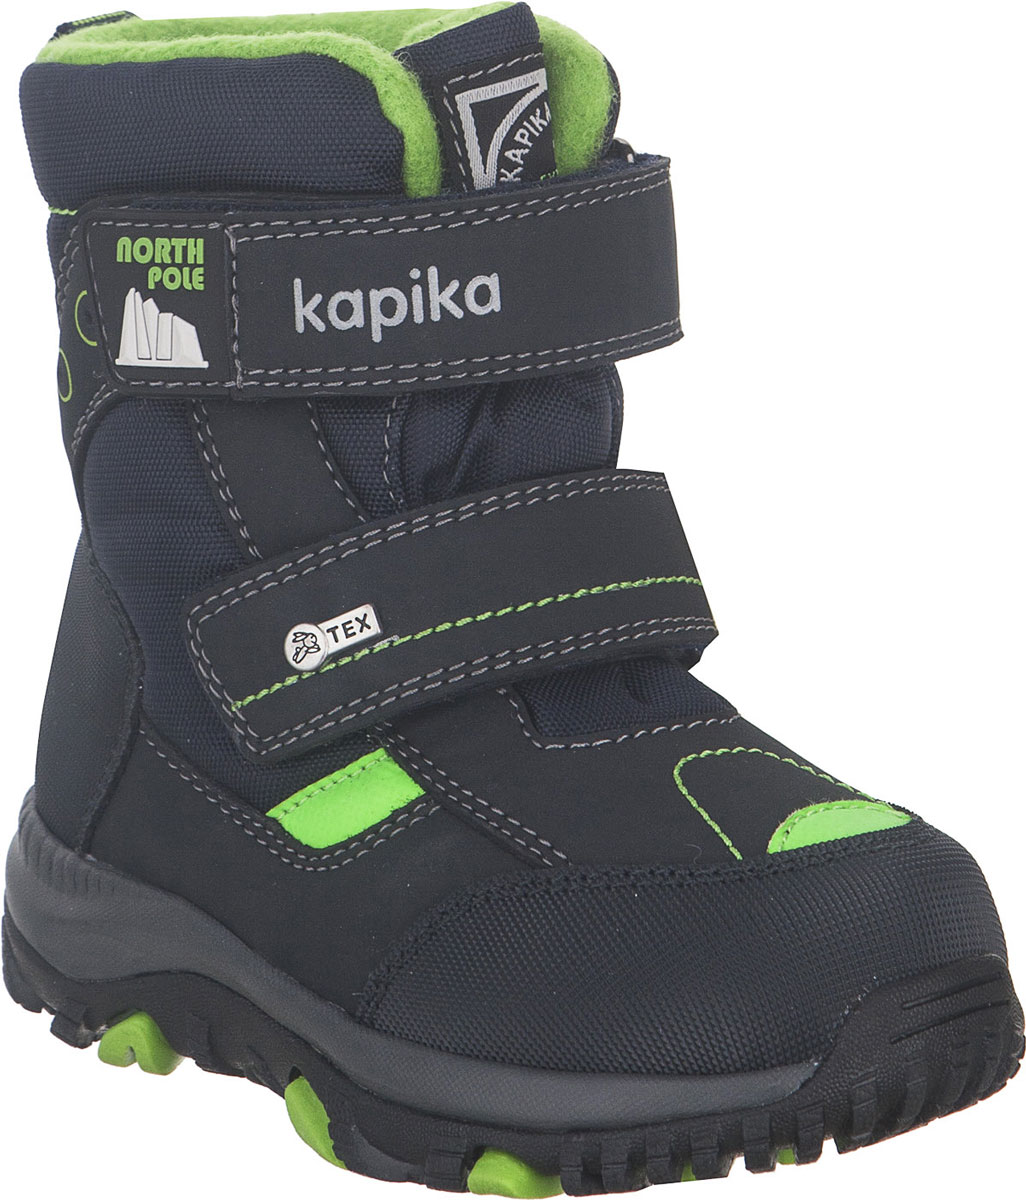 Ботинки для мальчика Kapika, цвет: темно-синий, салатовый. 41228-2. Размер 24